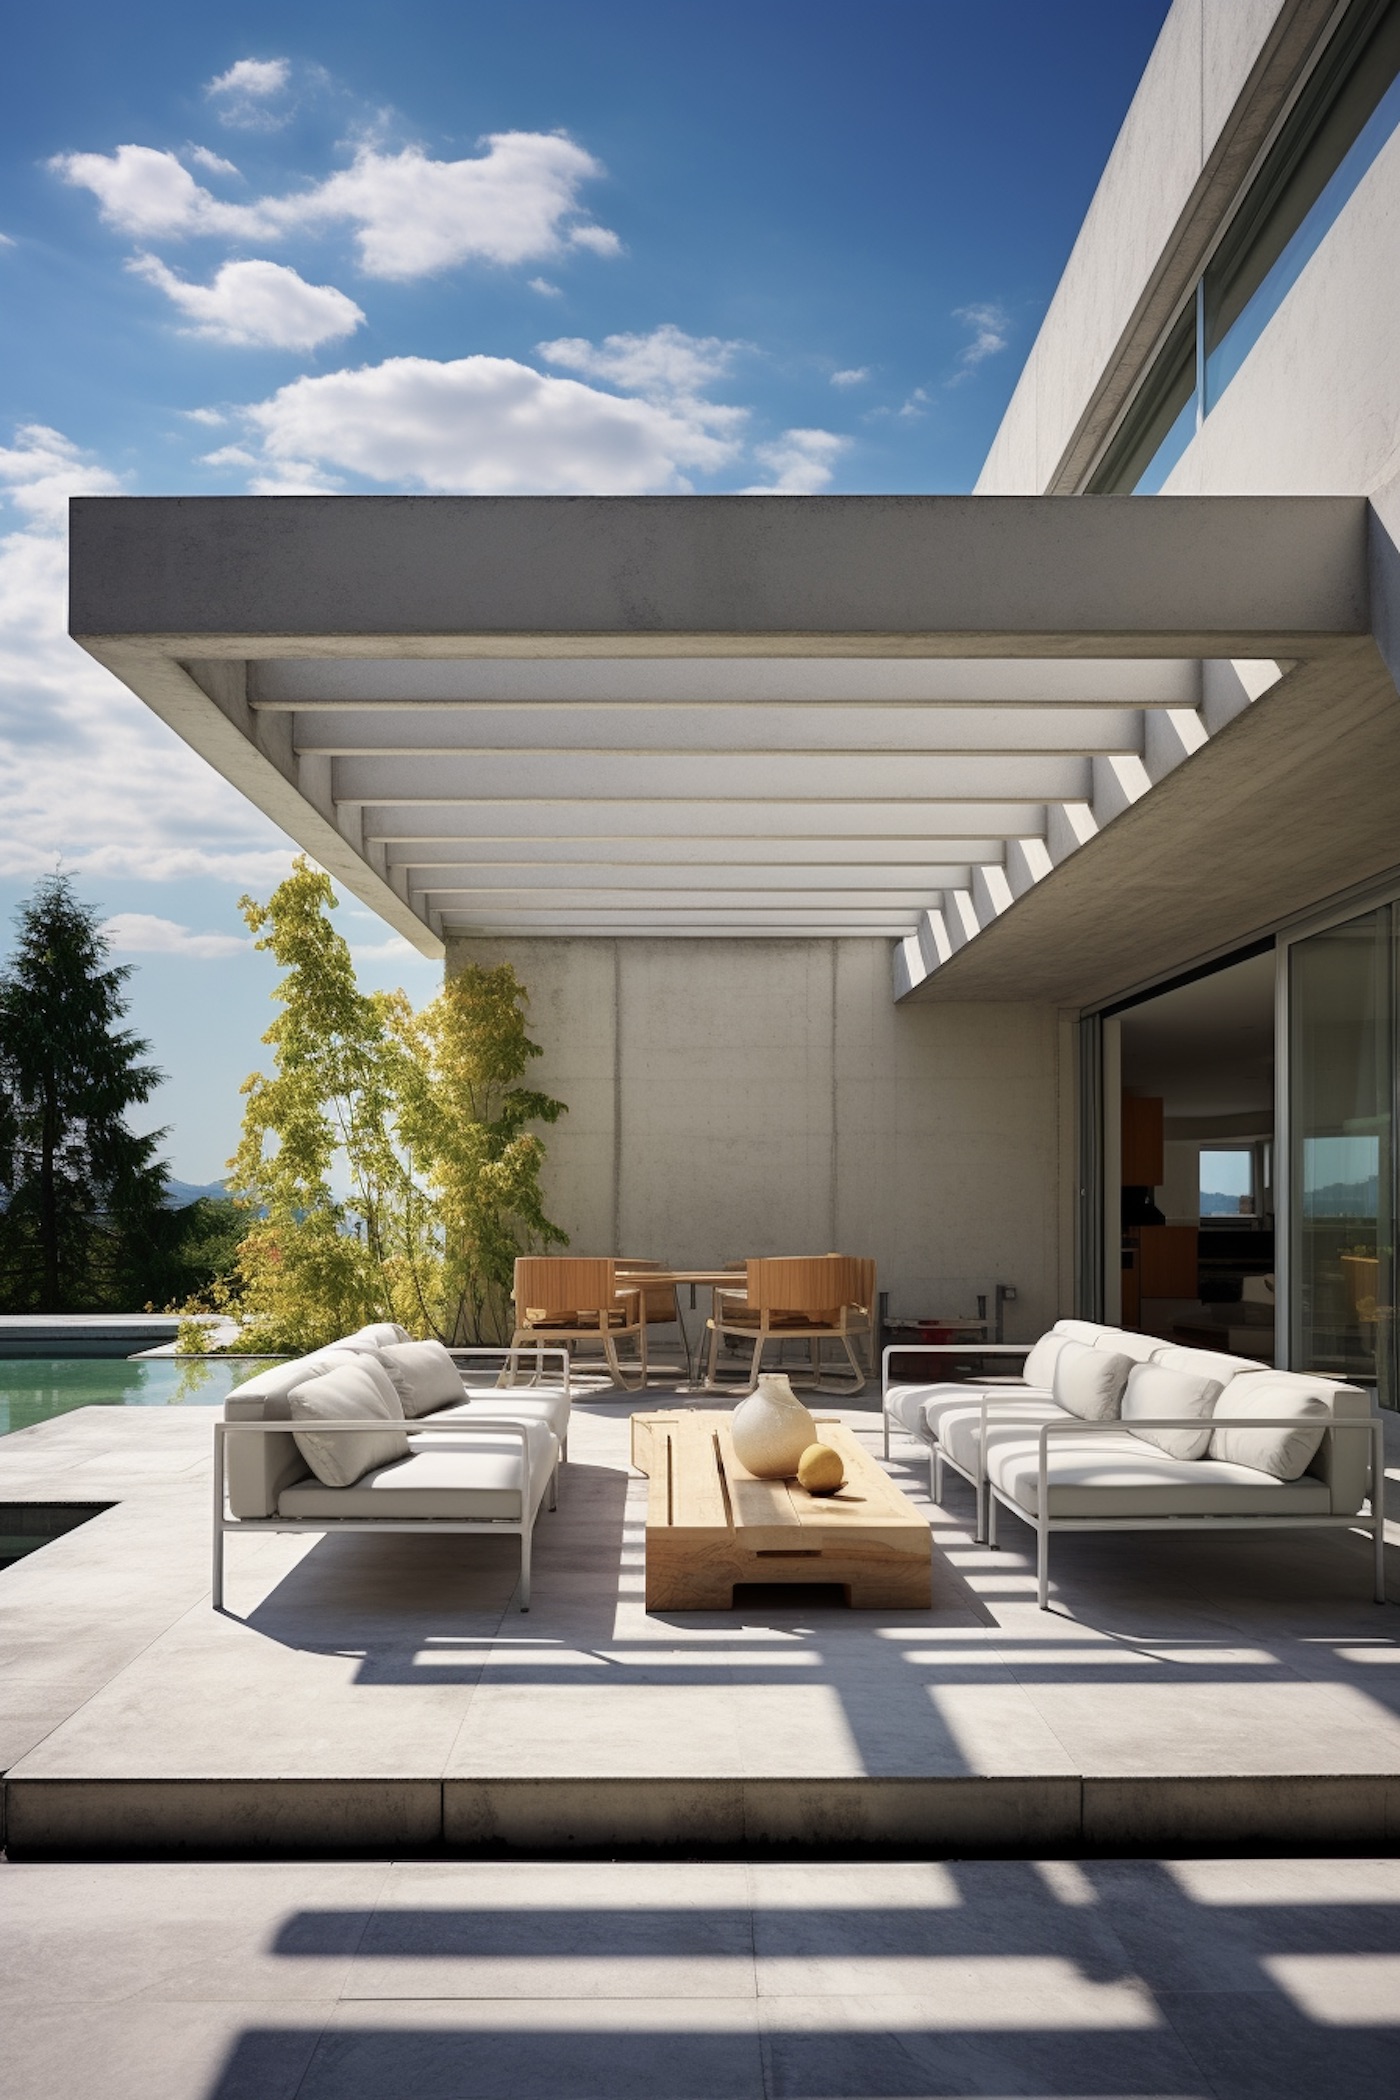 terrasse beton gris clair salon de jardin table basse bois brut